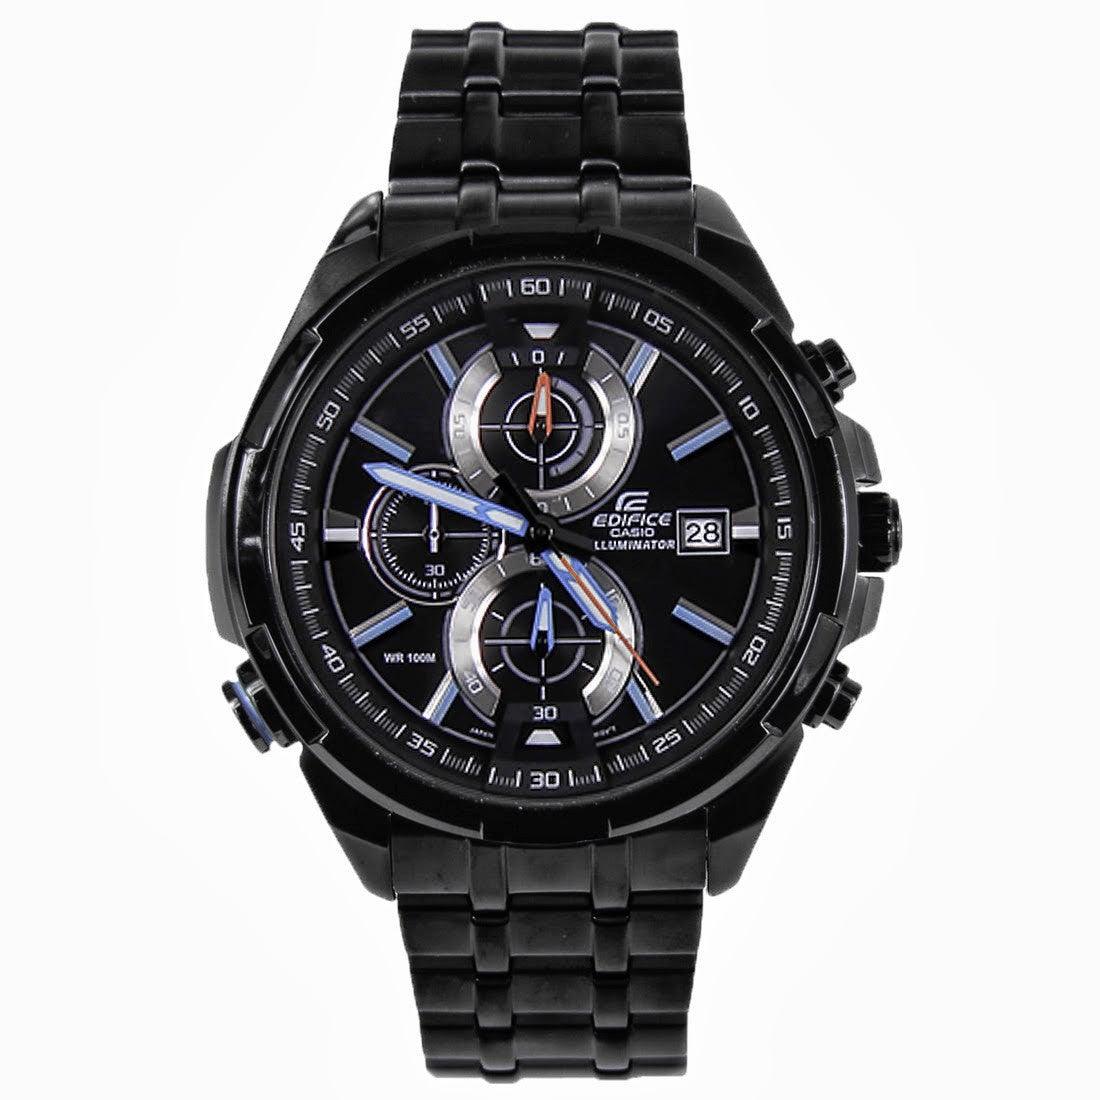 Casio Edifice Neon Illuminator Men's Chronograph Sport Watch EFR-536BK-1A2V - Obeezi.com